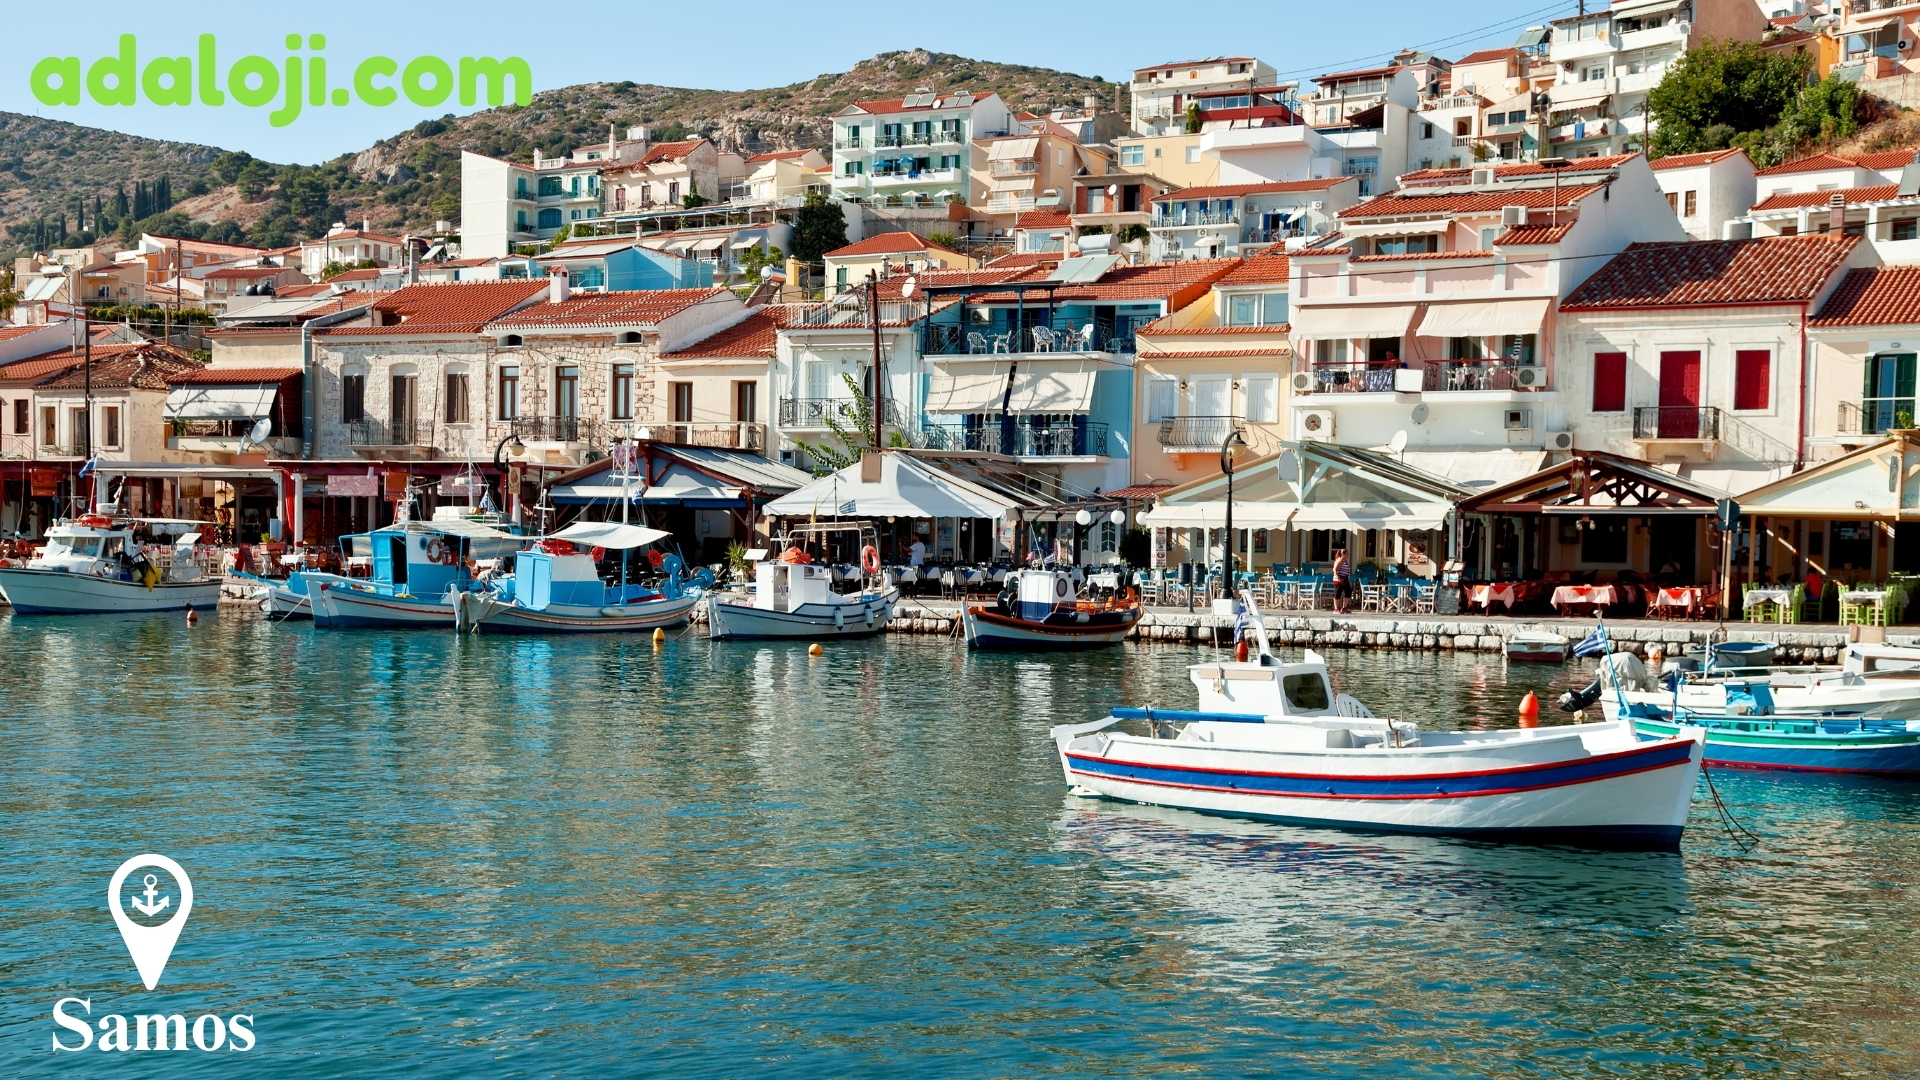 Samos (Sisam) - Ege Denizi’ne Açılan Kapınız.